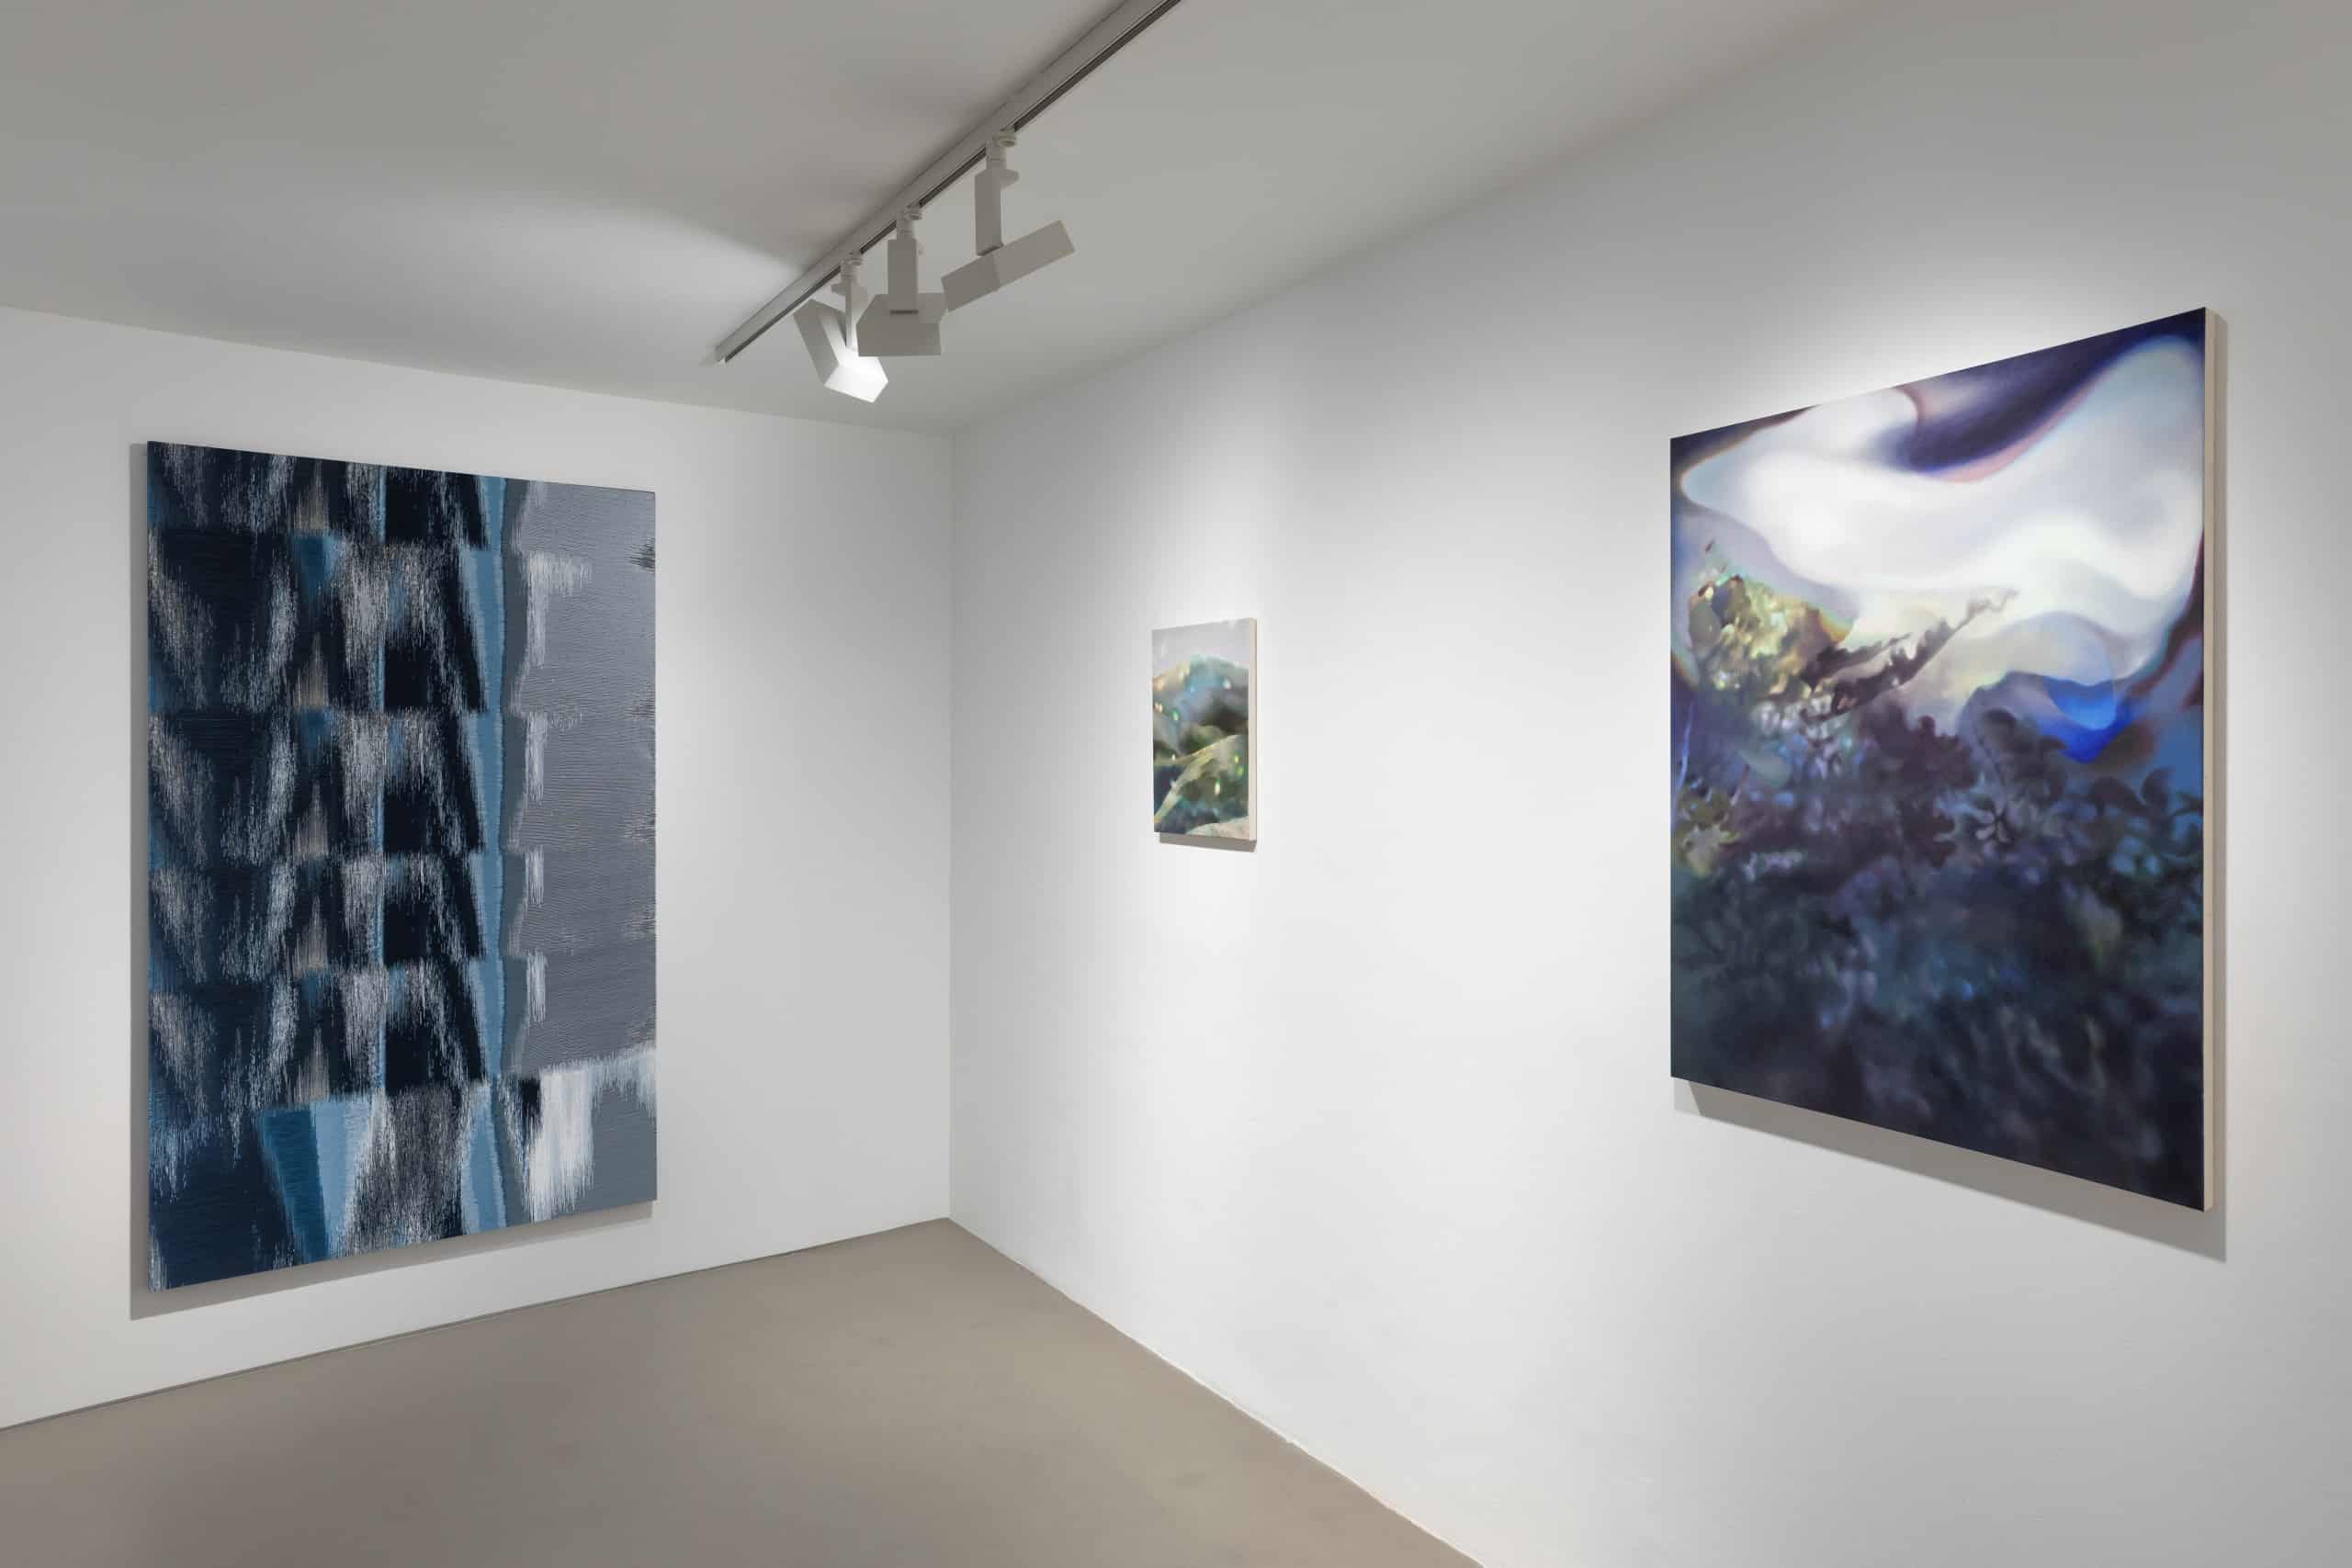 Blick in die Ausstellung, rechts Arbeiten von Lena Keller und links von Constanza Camila Kramer Garfias. Foto: Harry Zdera